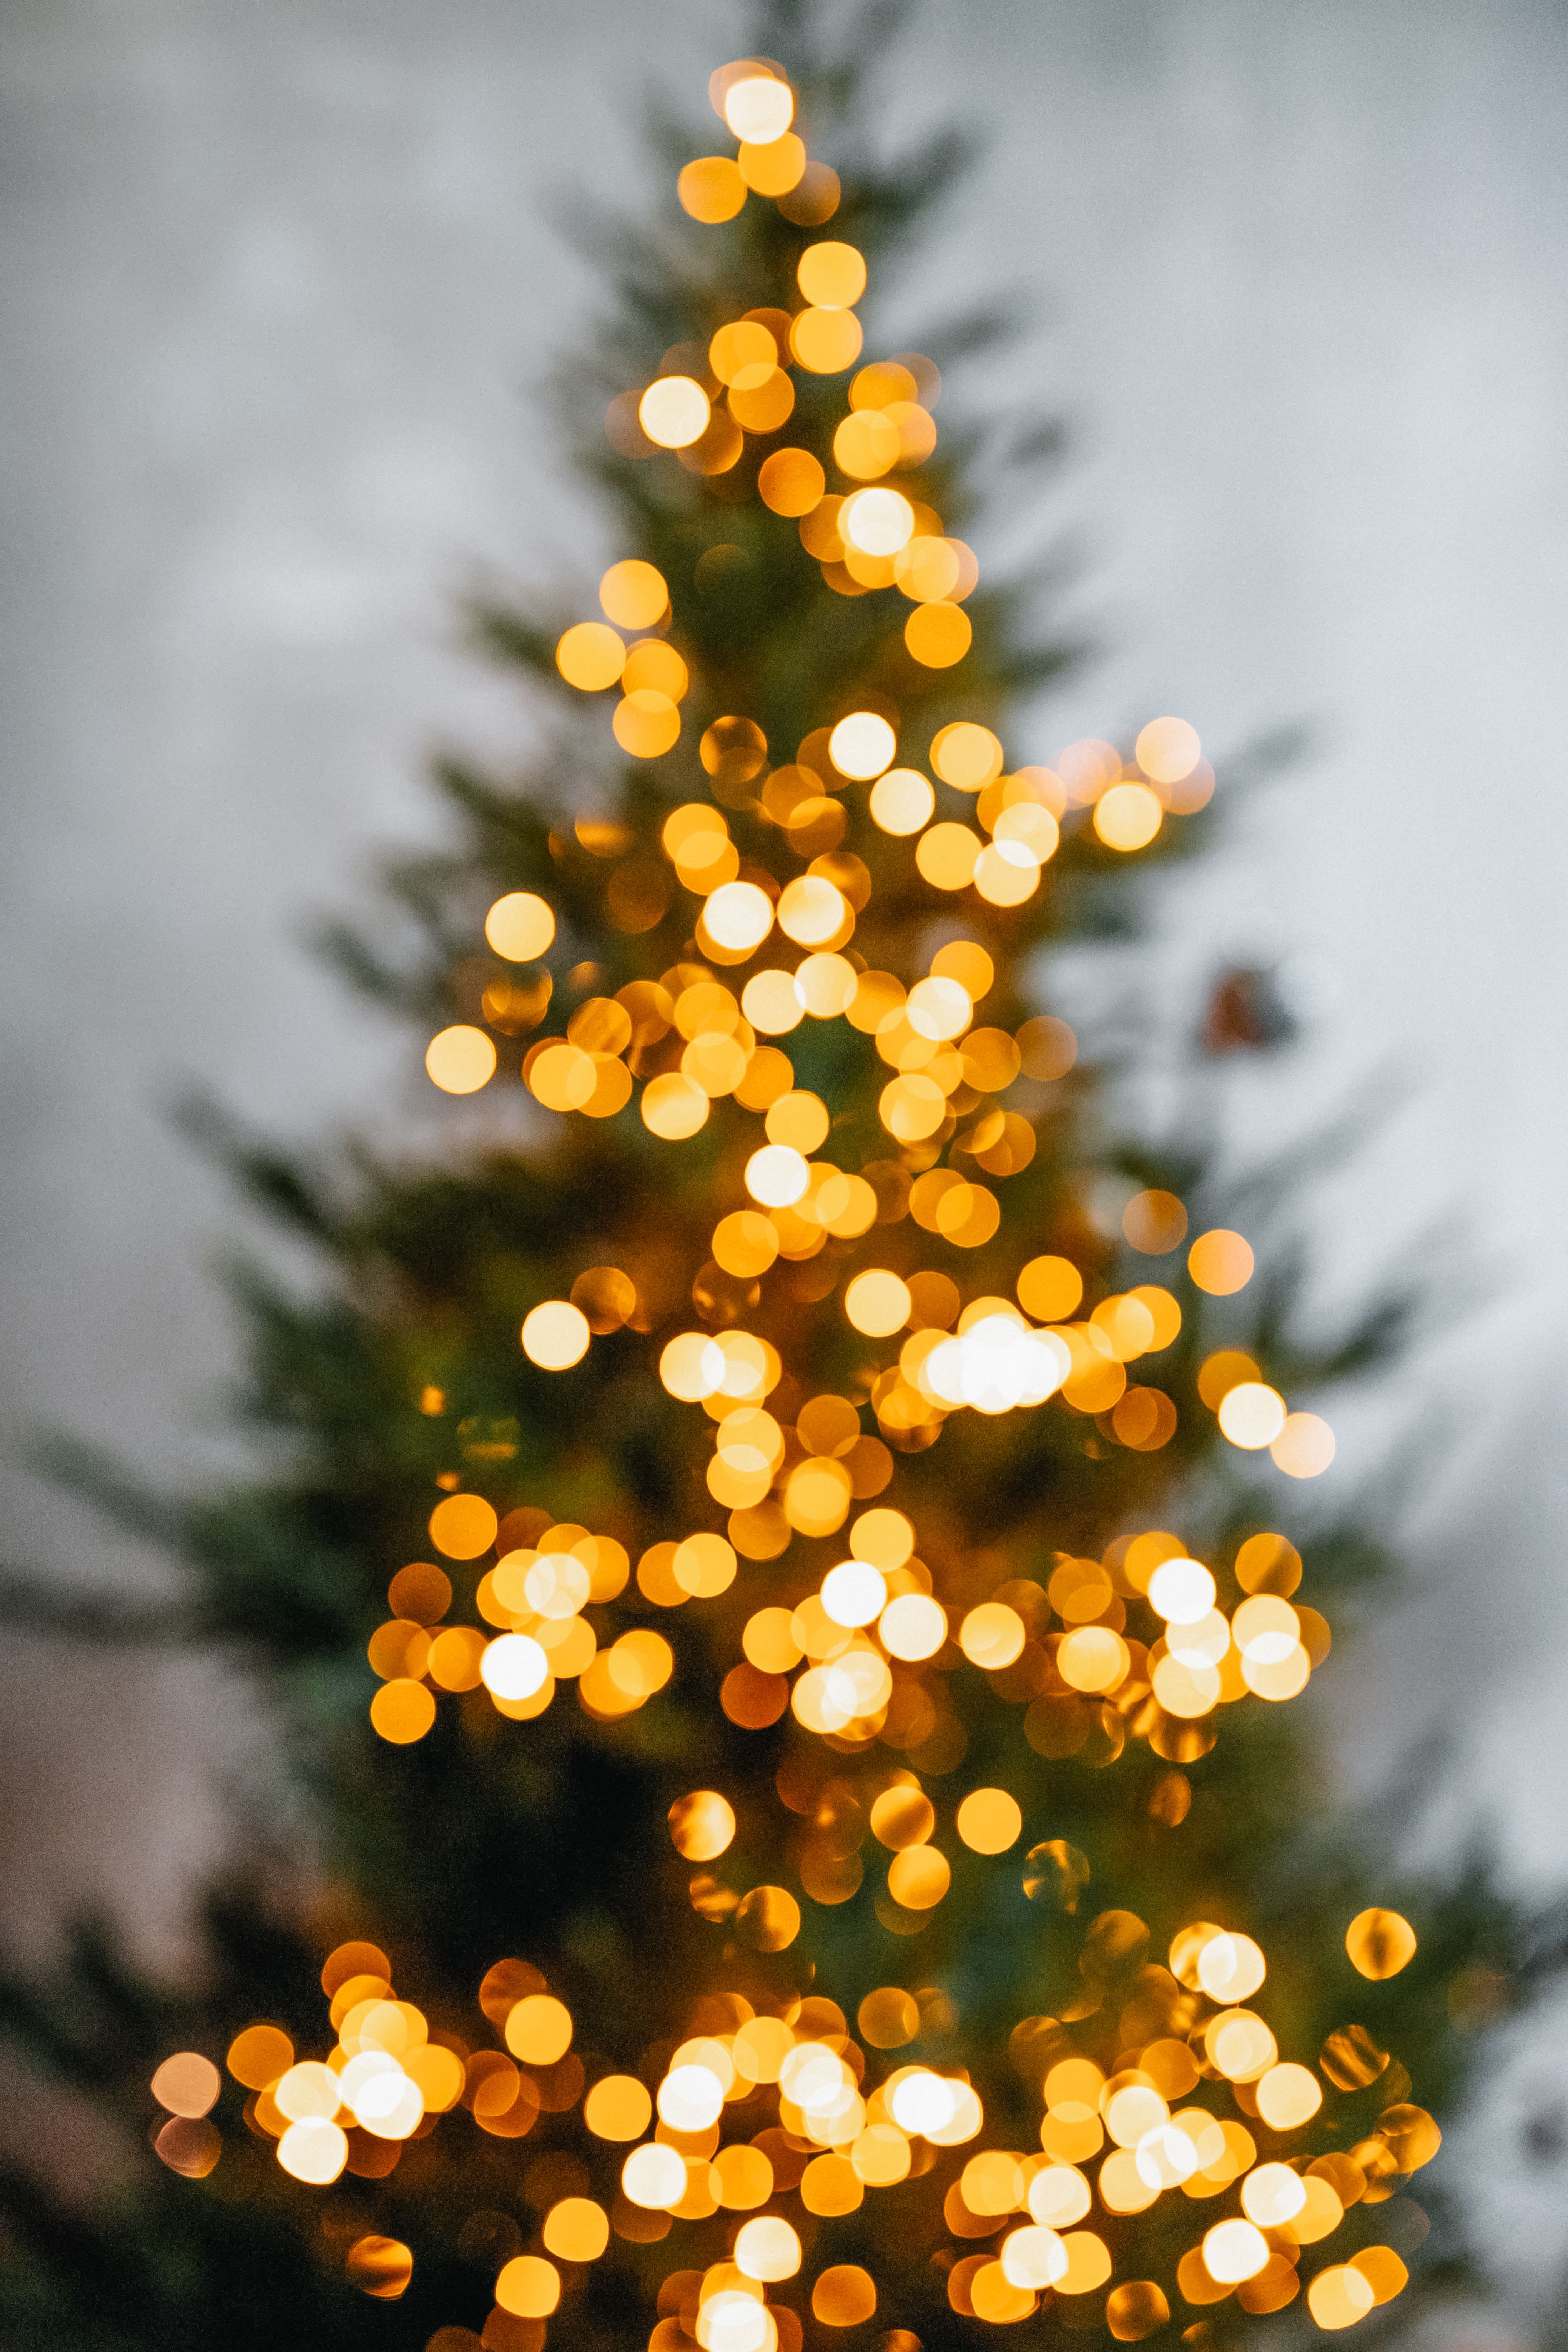 Christmas Lights on Christmas Tree · Free